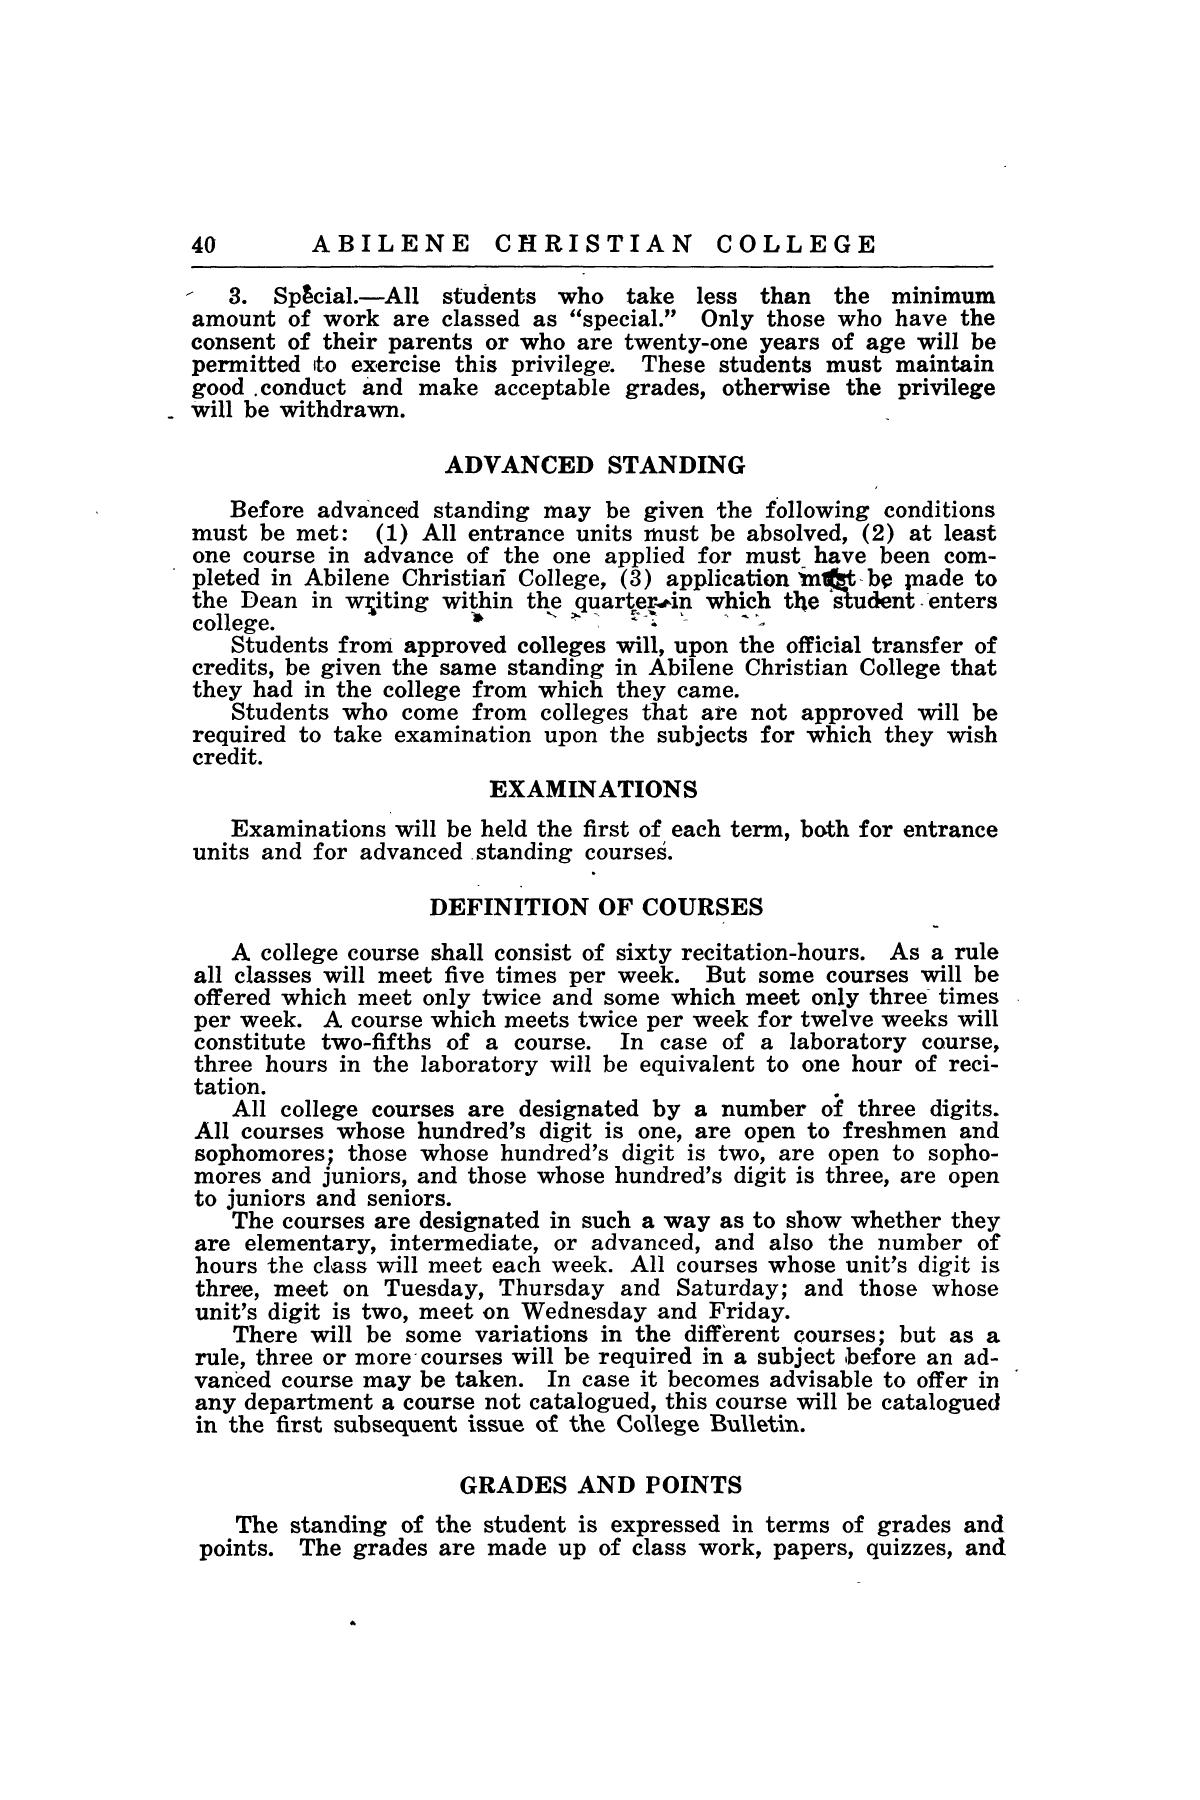 Catalog of Abilene Christian College, 1920-1921
                                                
                                                    40
                                                